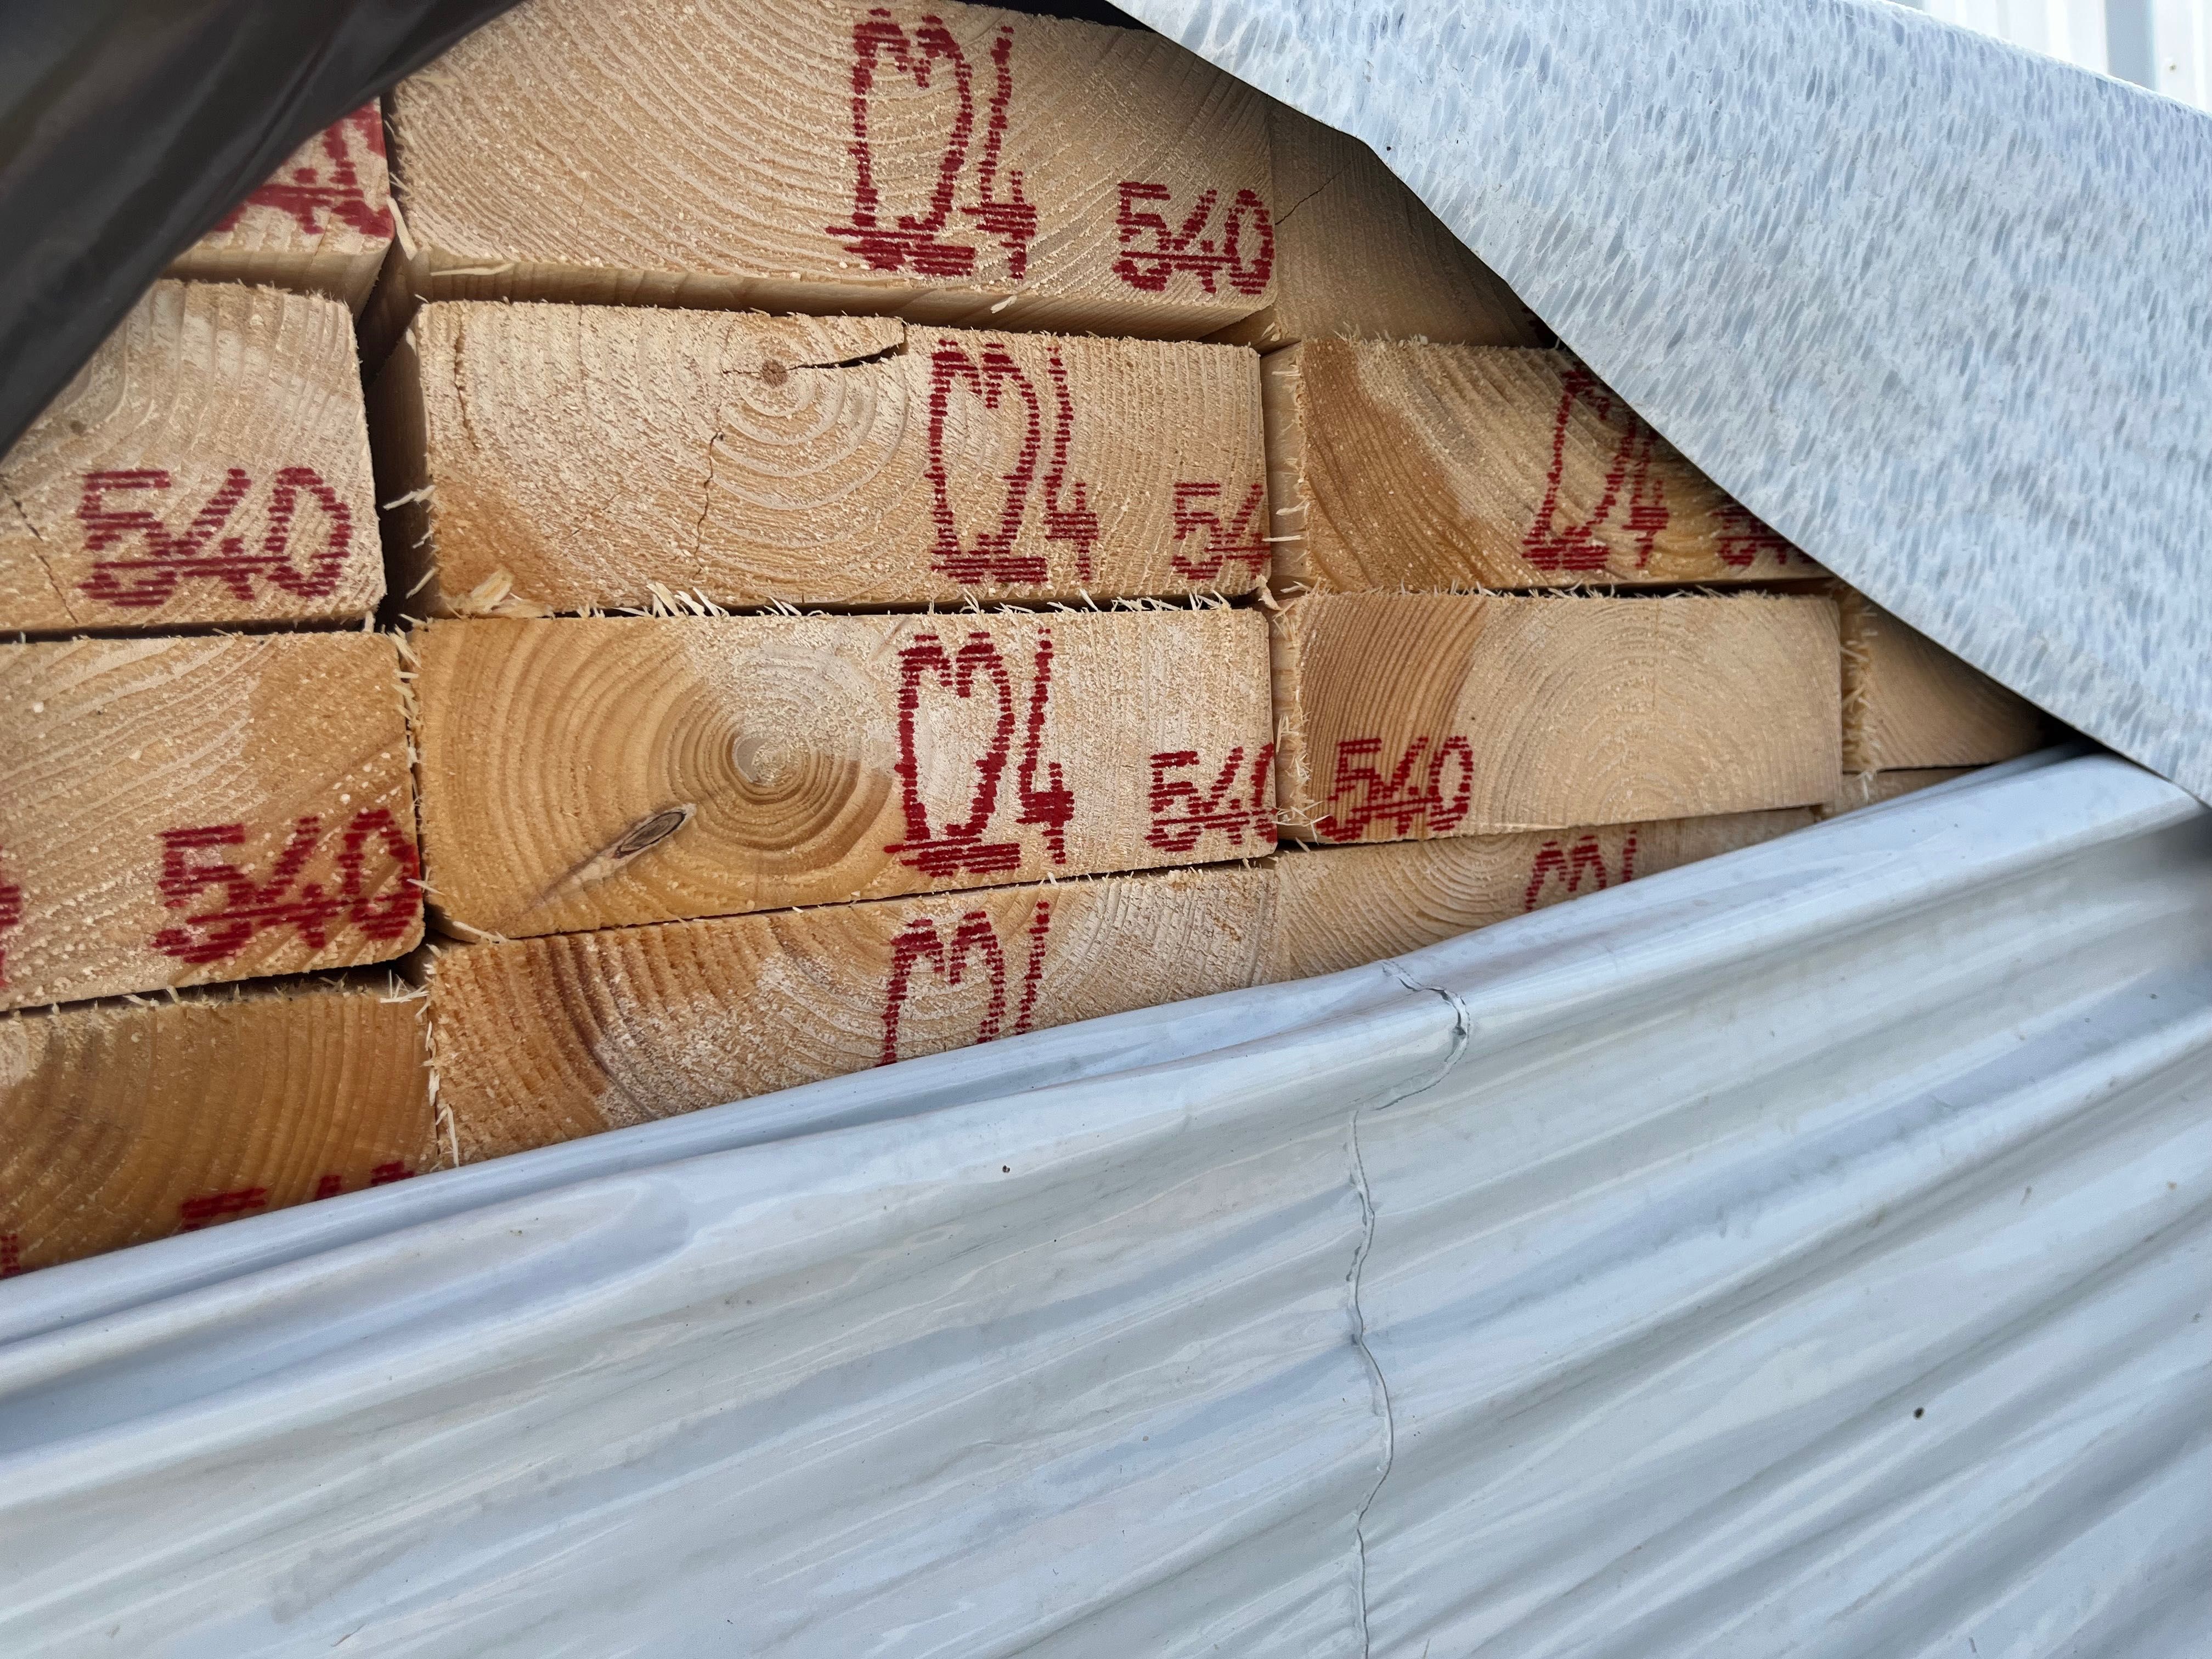 Drewno konstrukcyjne C24